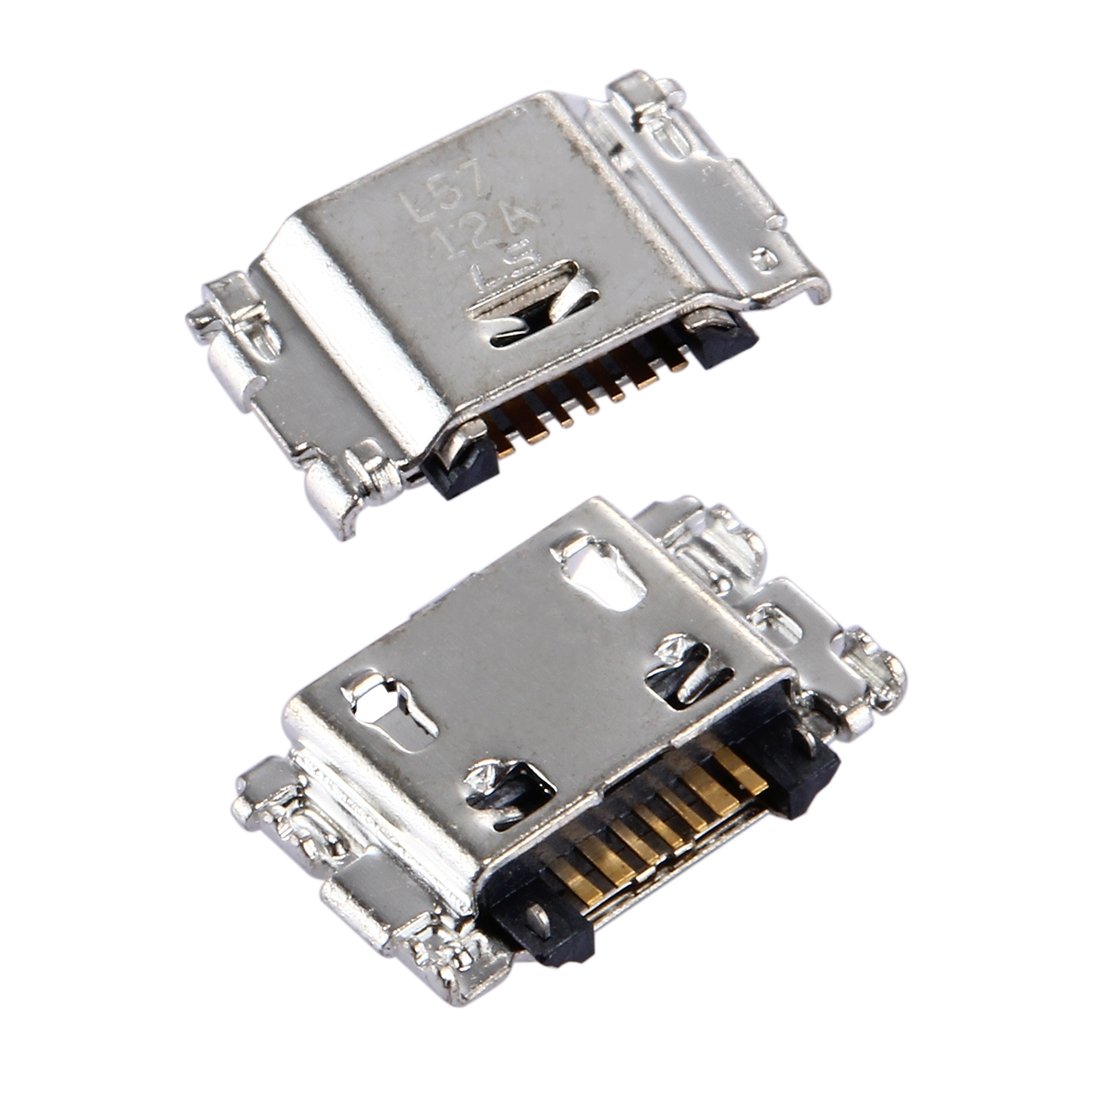 Superior Aburrido gancho Conector De Carga Micro USB para Samsung Galaxy J1 J100 / J5 J500 J530 / J3  J320 J330 / J7 J700 J730 / Tab A 8.0 T350